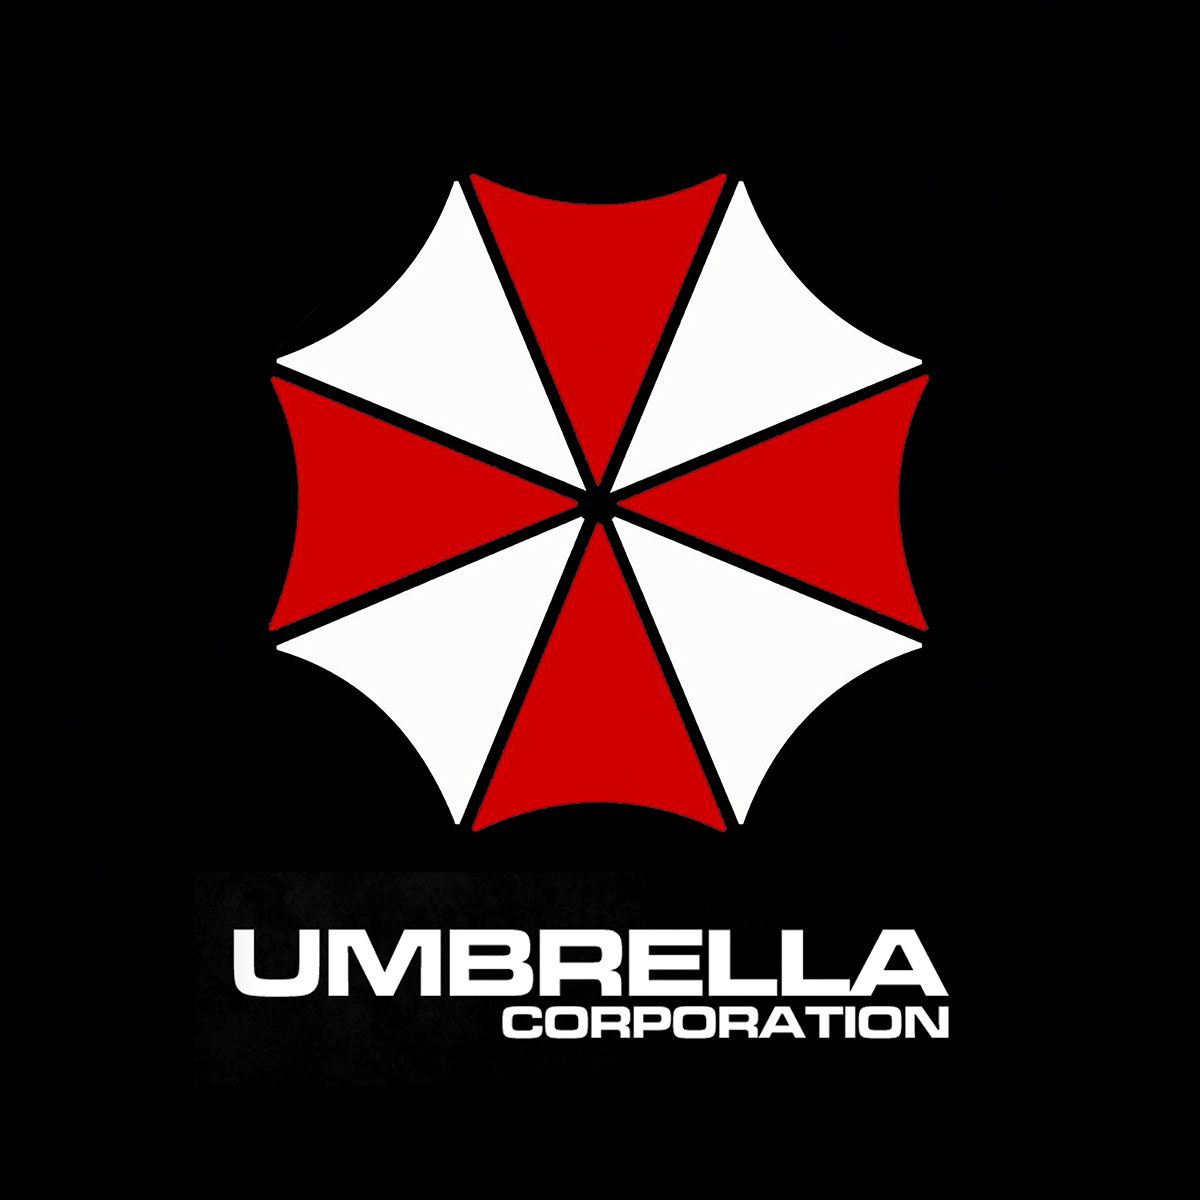 Nome do produto: Umbrella Corporation